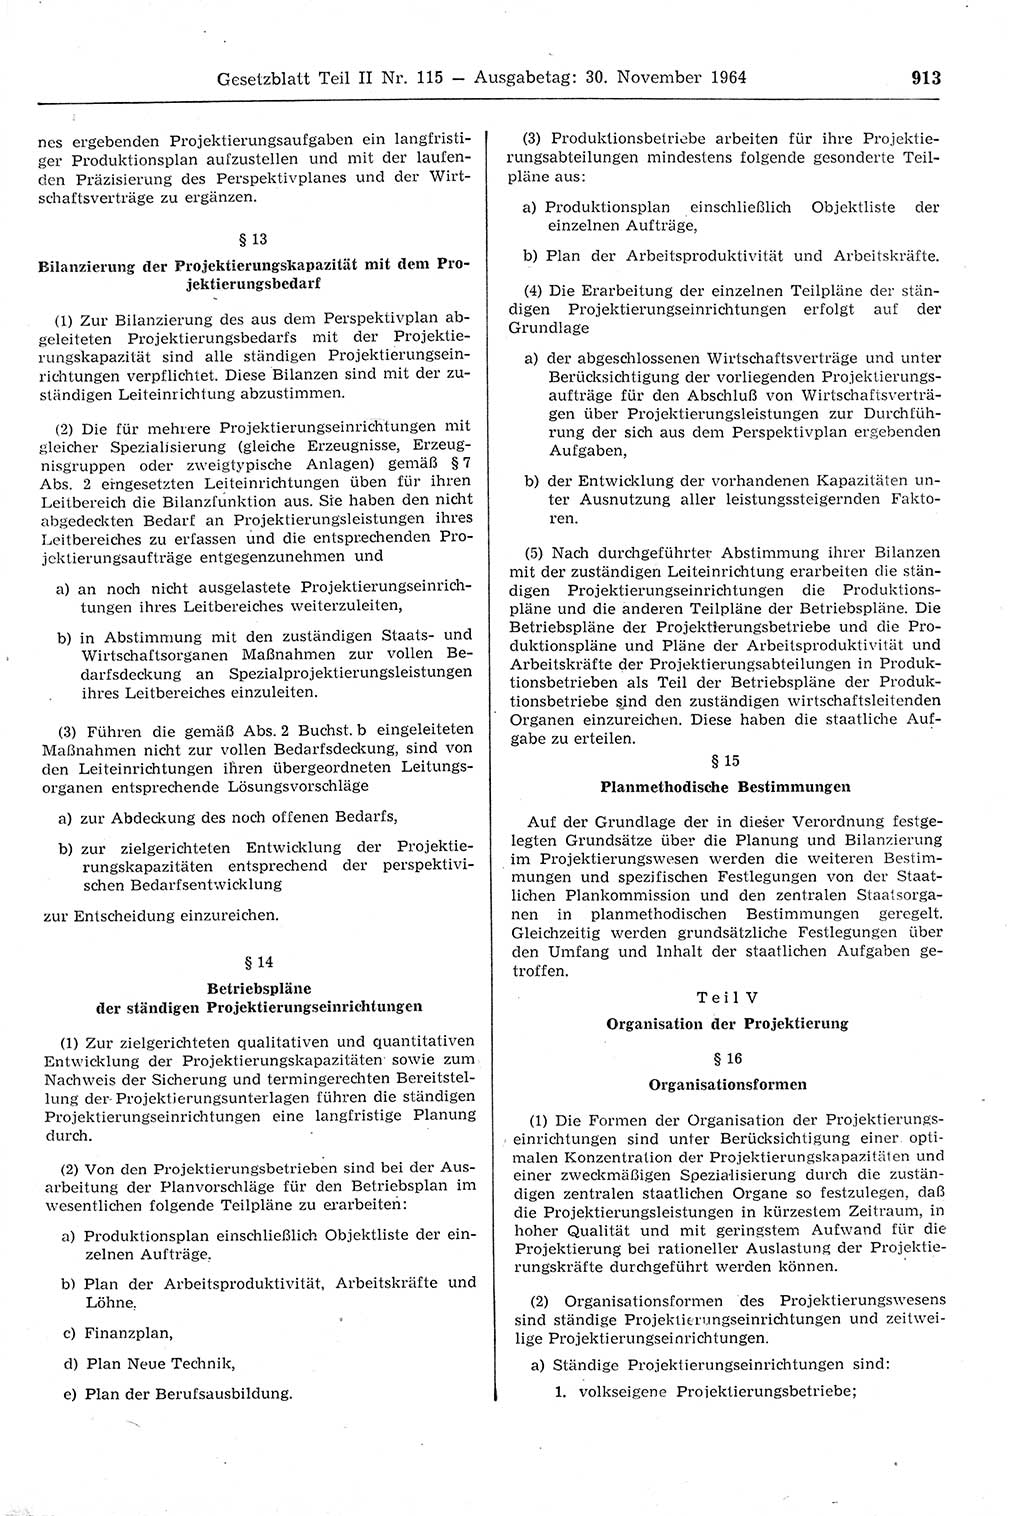 Gesetzblatt (GBl.) der Deutschen Demokratischen Republik (DDR) Teil ⅠⅠ 1964, Seite 913 (GBl. DDR ⅠⅠ 1964, S. 913)